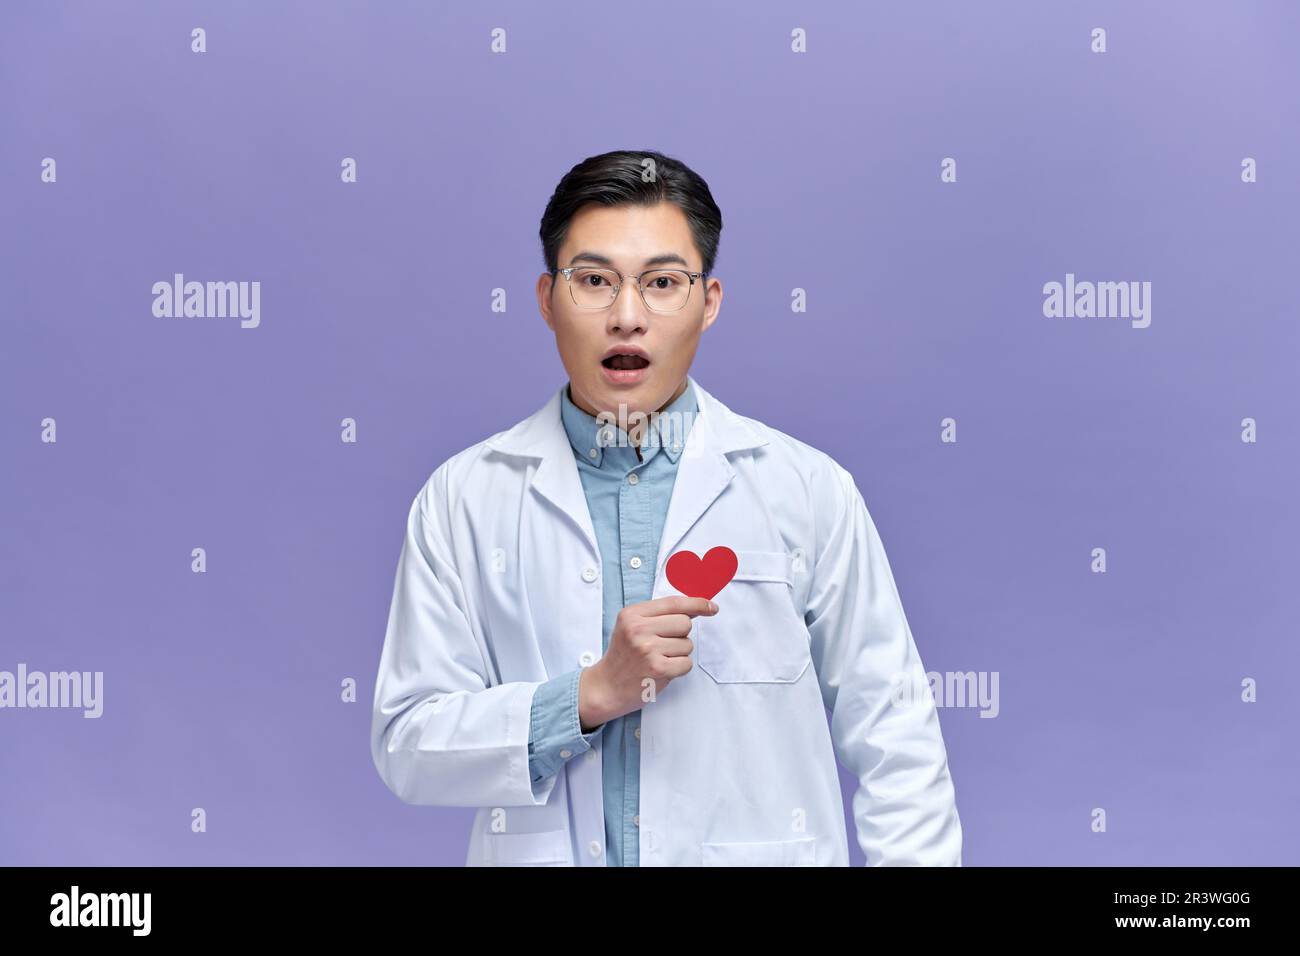 cardiologo medico uomo che tiene il cuore rosso, infastidito e frustrato gridare con rabbia, Foto Stock